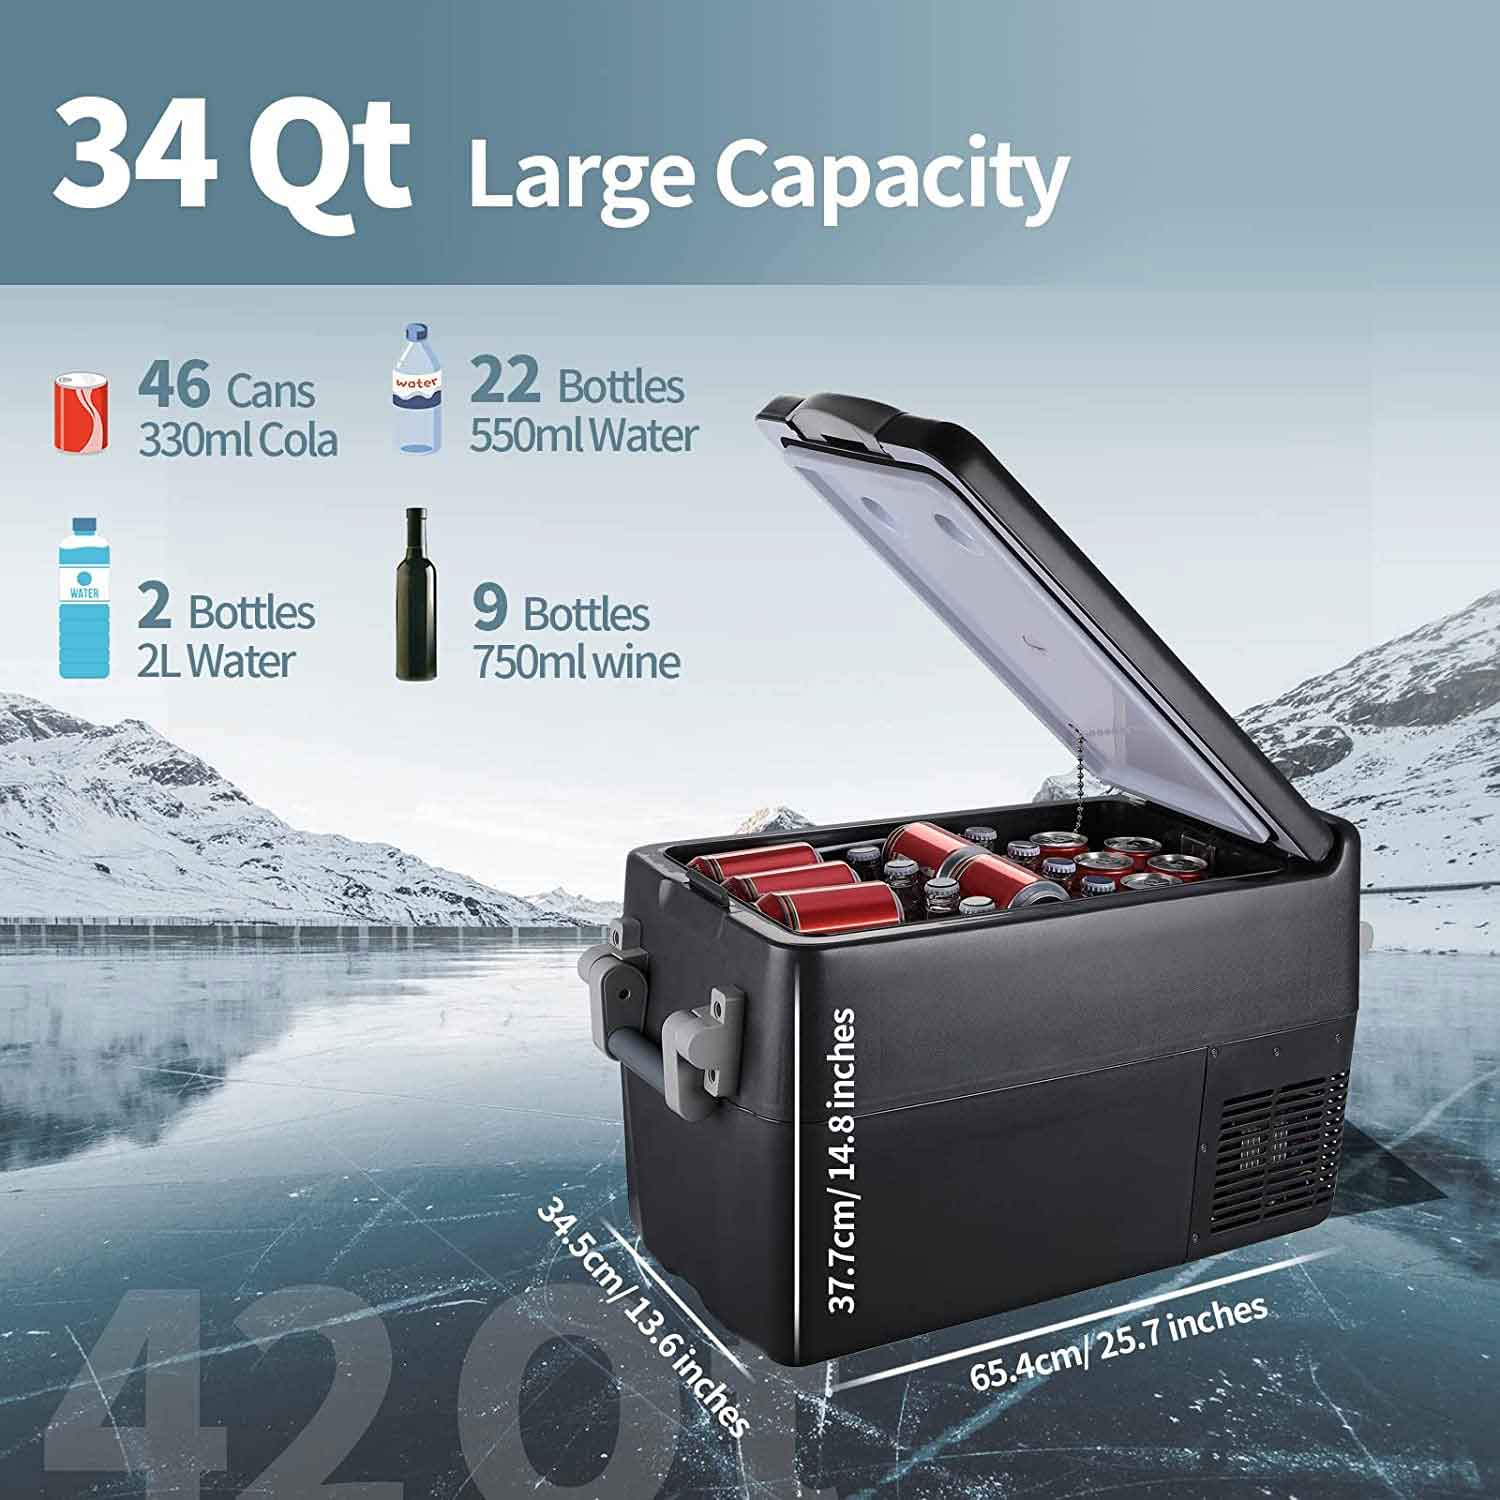  BougeRV 12 Volt Refrigerator, CRPRO 30 Quart 12V Car